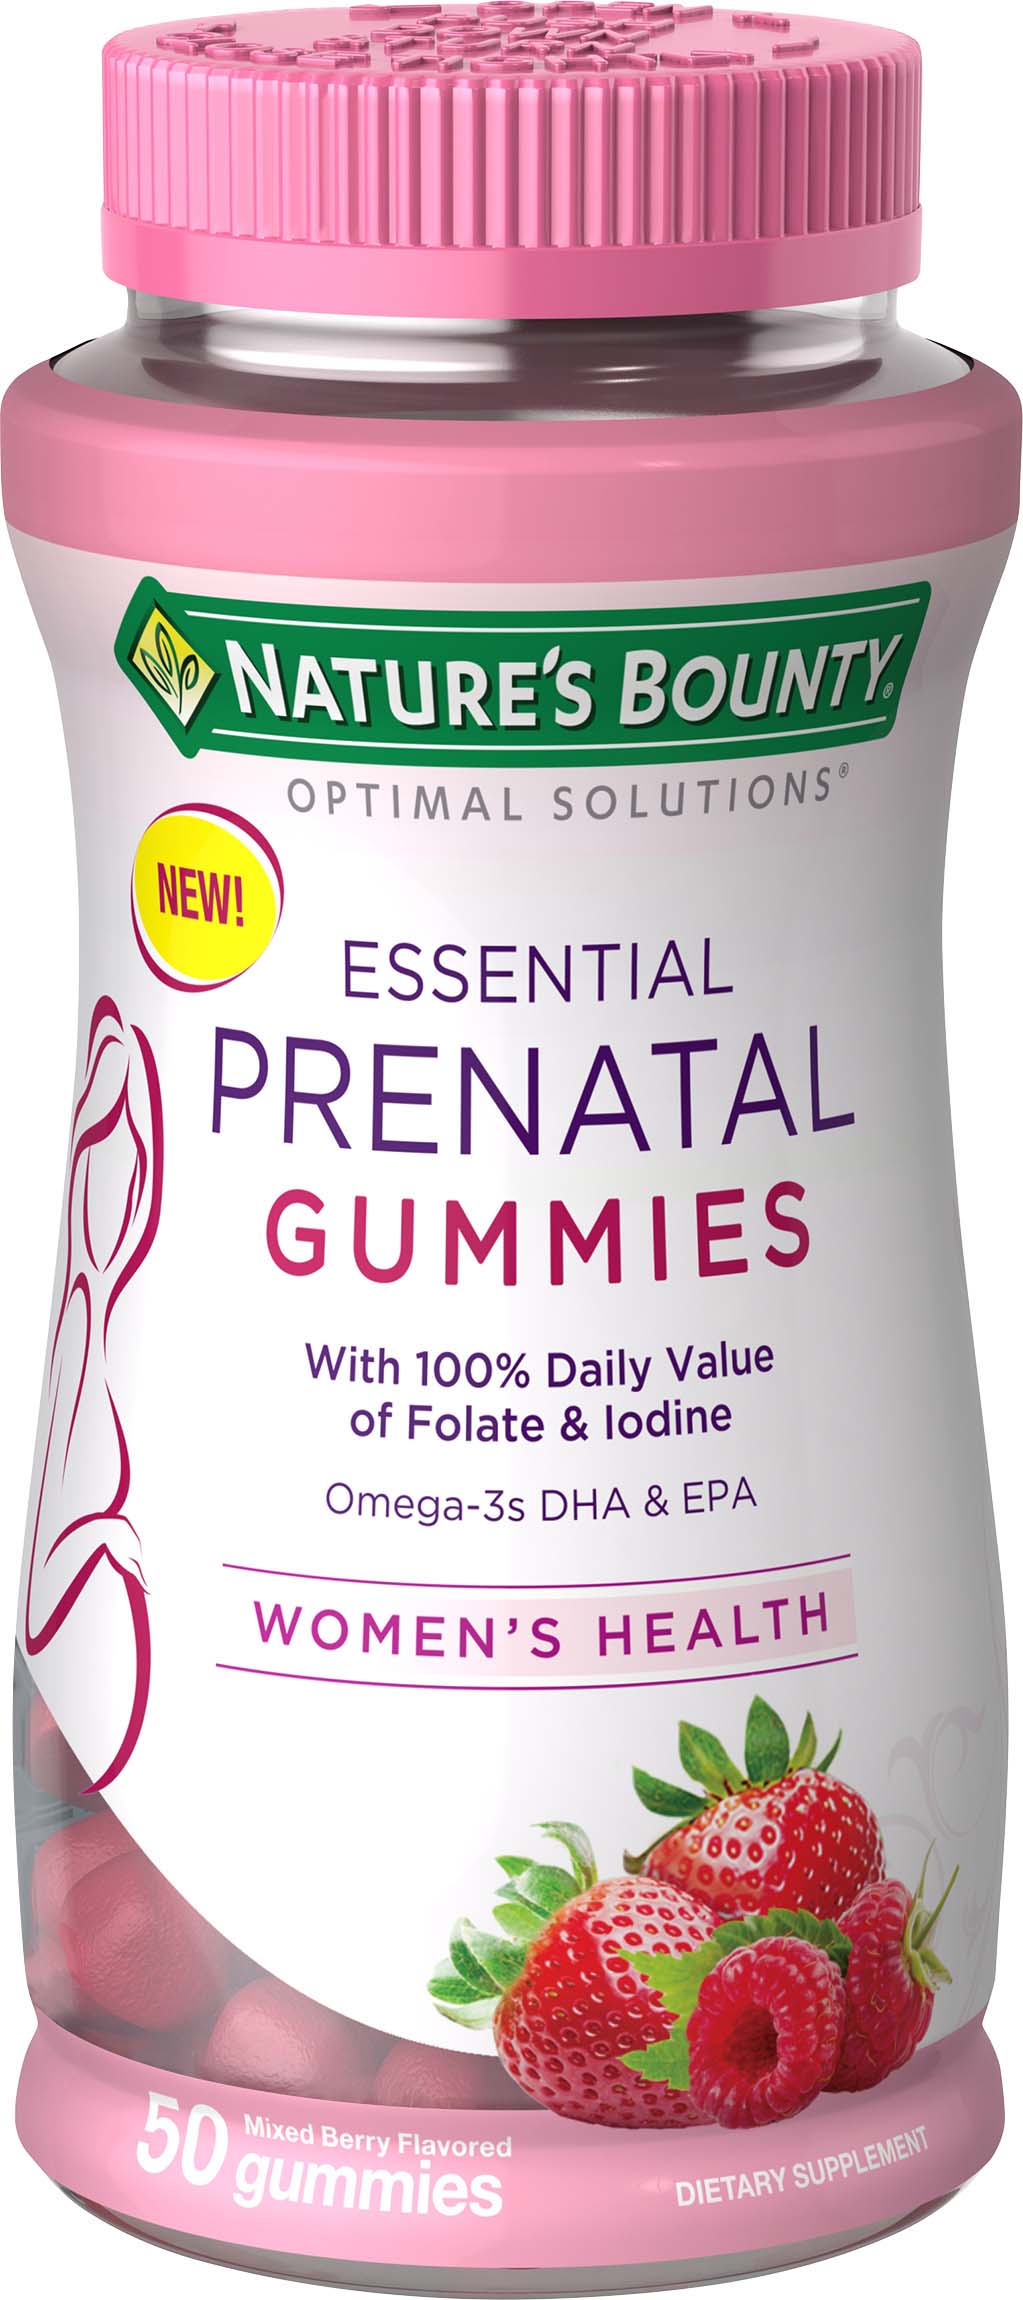 Nature's Bounty Optimal Solutions - Gomitas prenatales esenciales, 50 u.